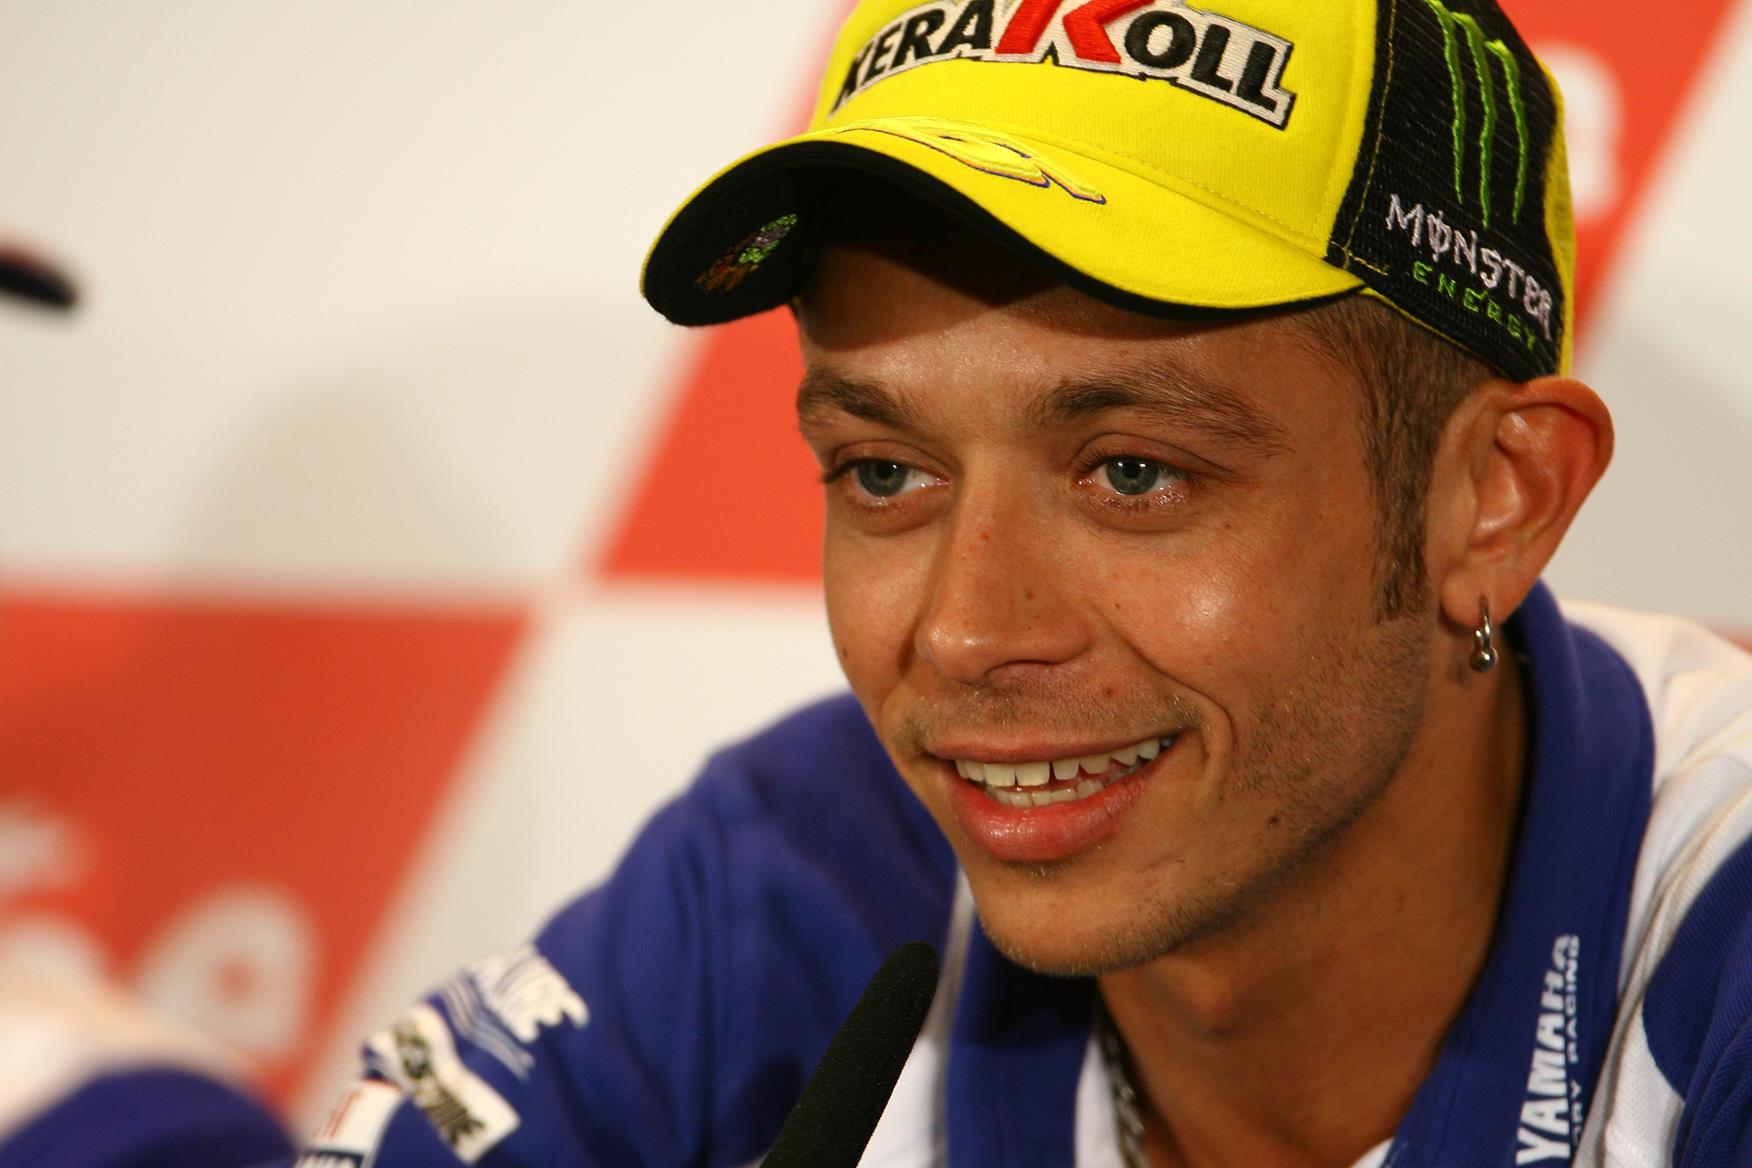 Estoril MotoGP: Valentino Rossi chasing grip | MCN